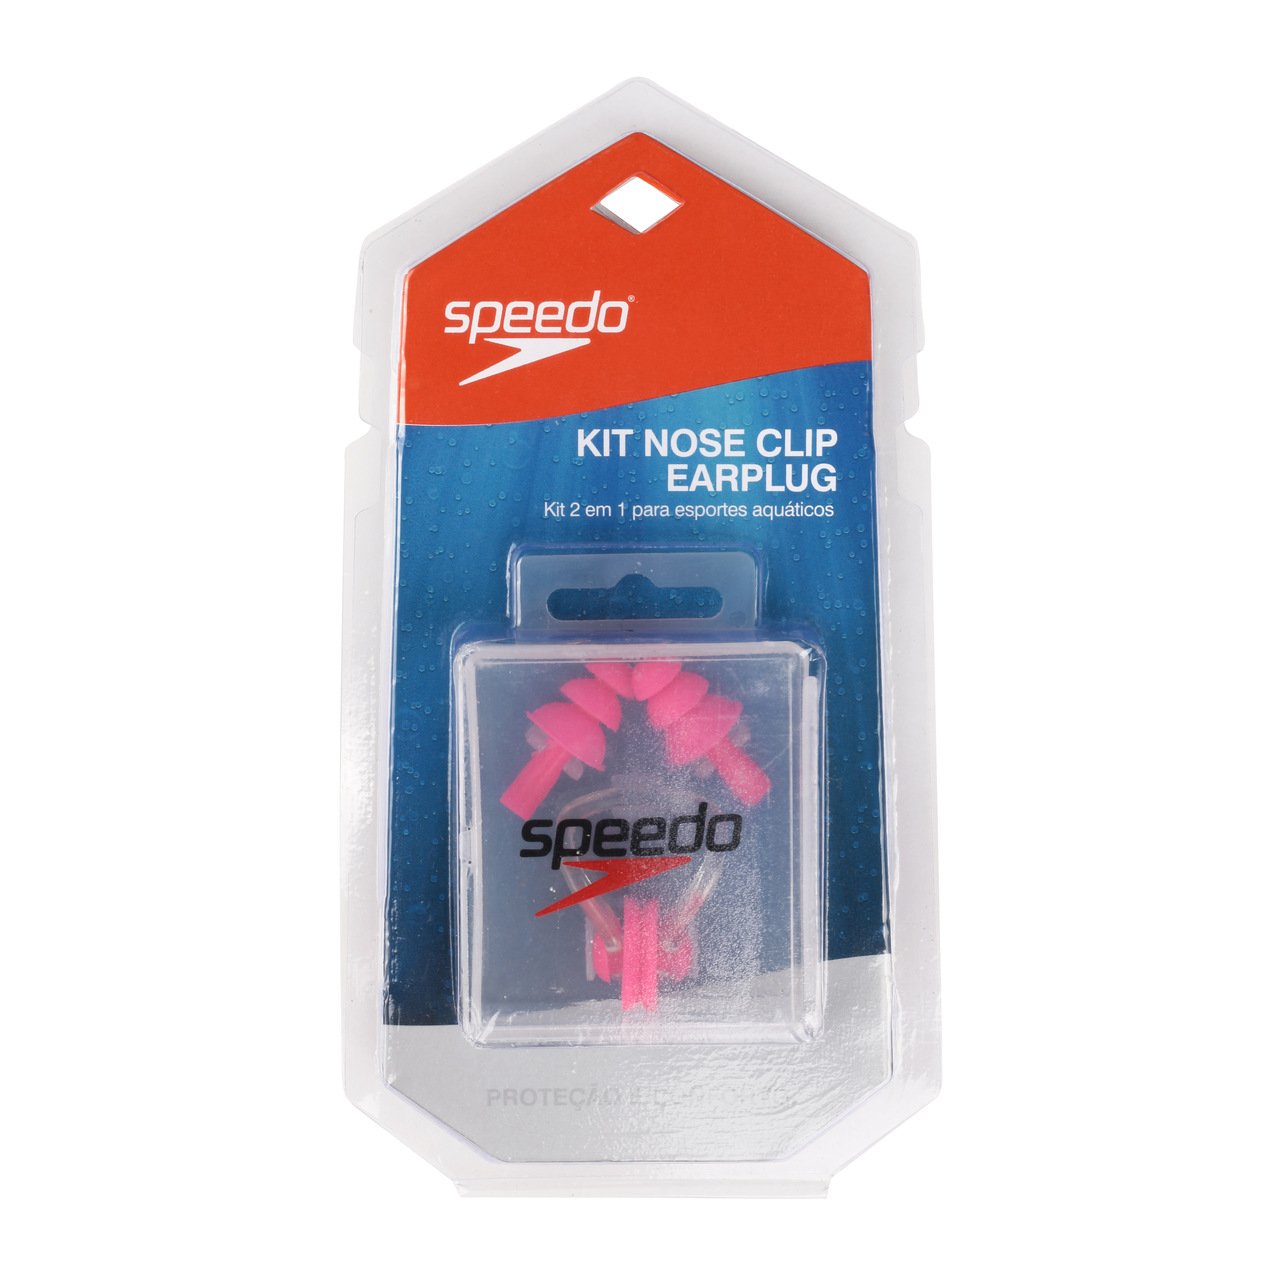 Nose Clip e Earplug Speedo Kit 2 em 1 - Rosa